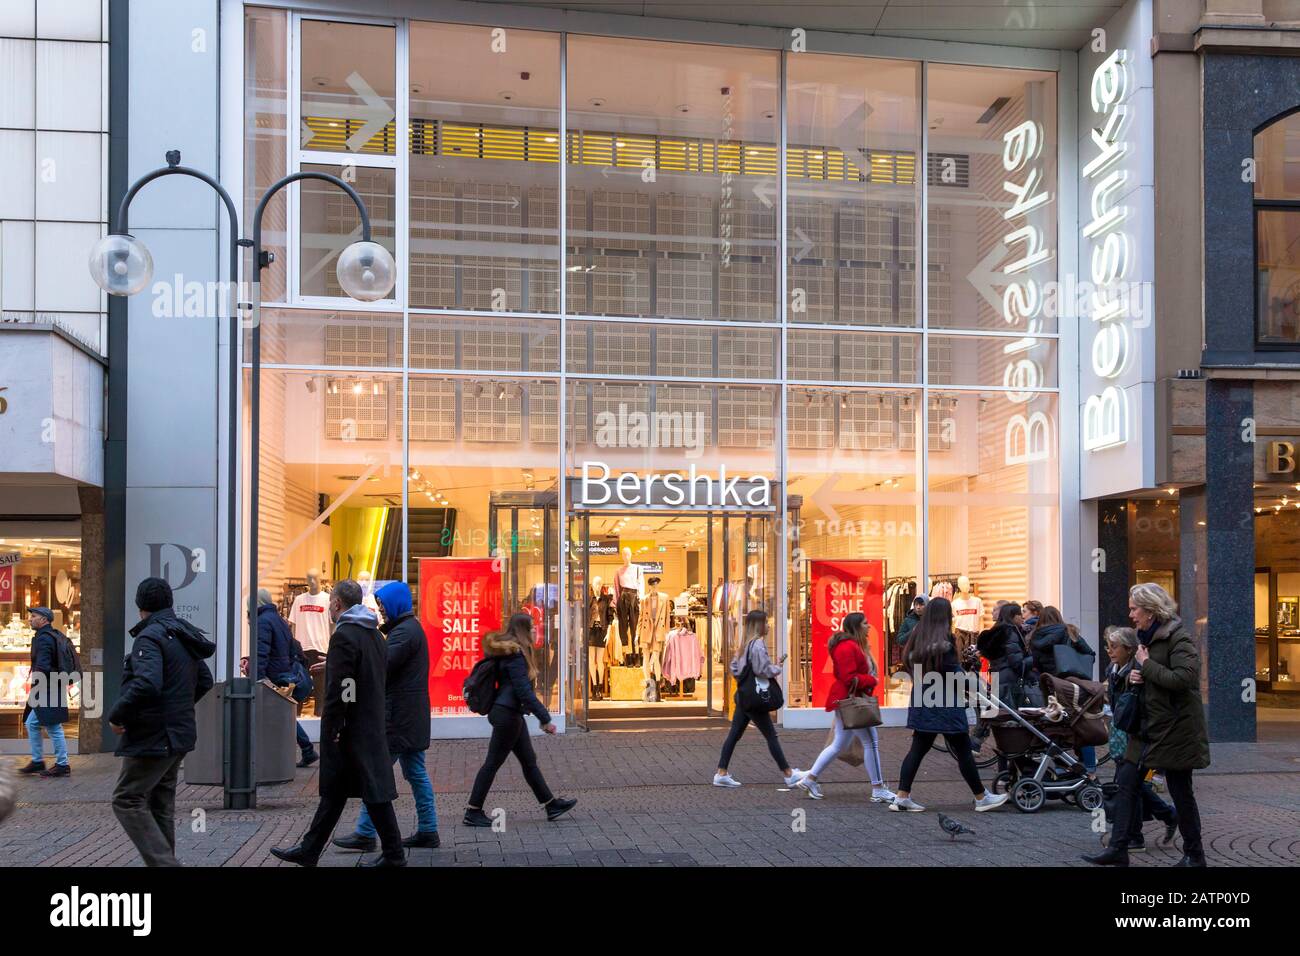 fashion store Bershka on shopping street Schildergasse, Cologne, Germany.  Modegeschaeft Bershka in der Einkaufsstrasse Schildergasse, Koeln, Deutschl  Stock Photo - Alamy